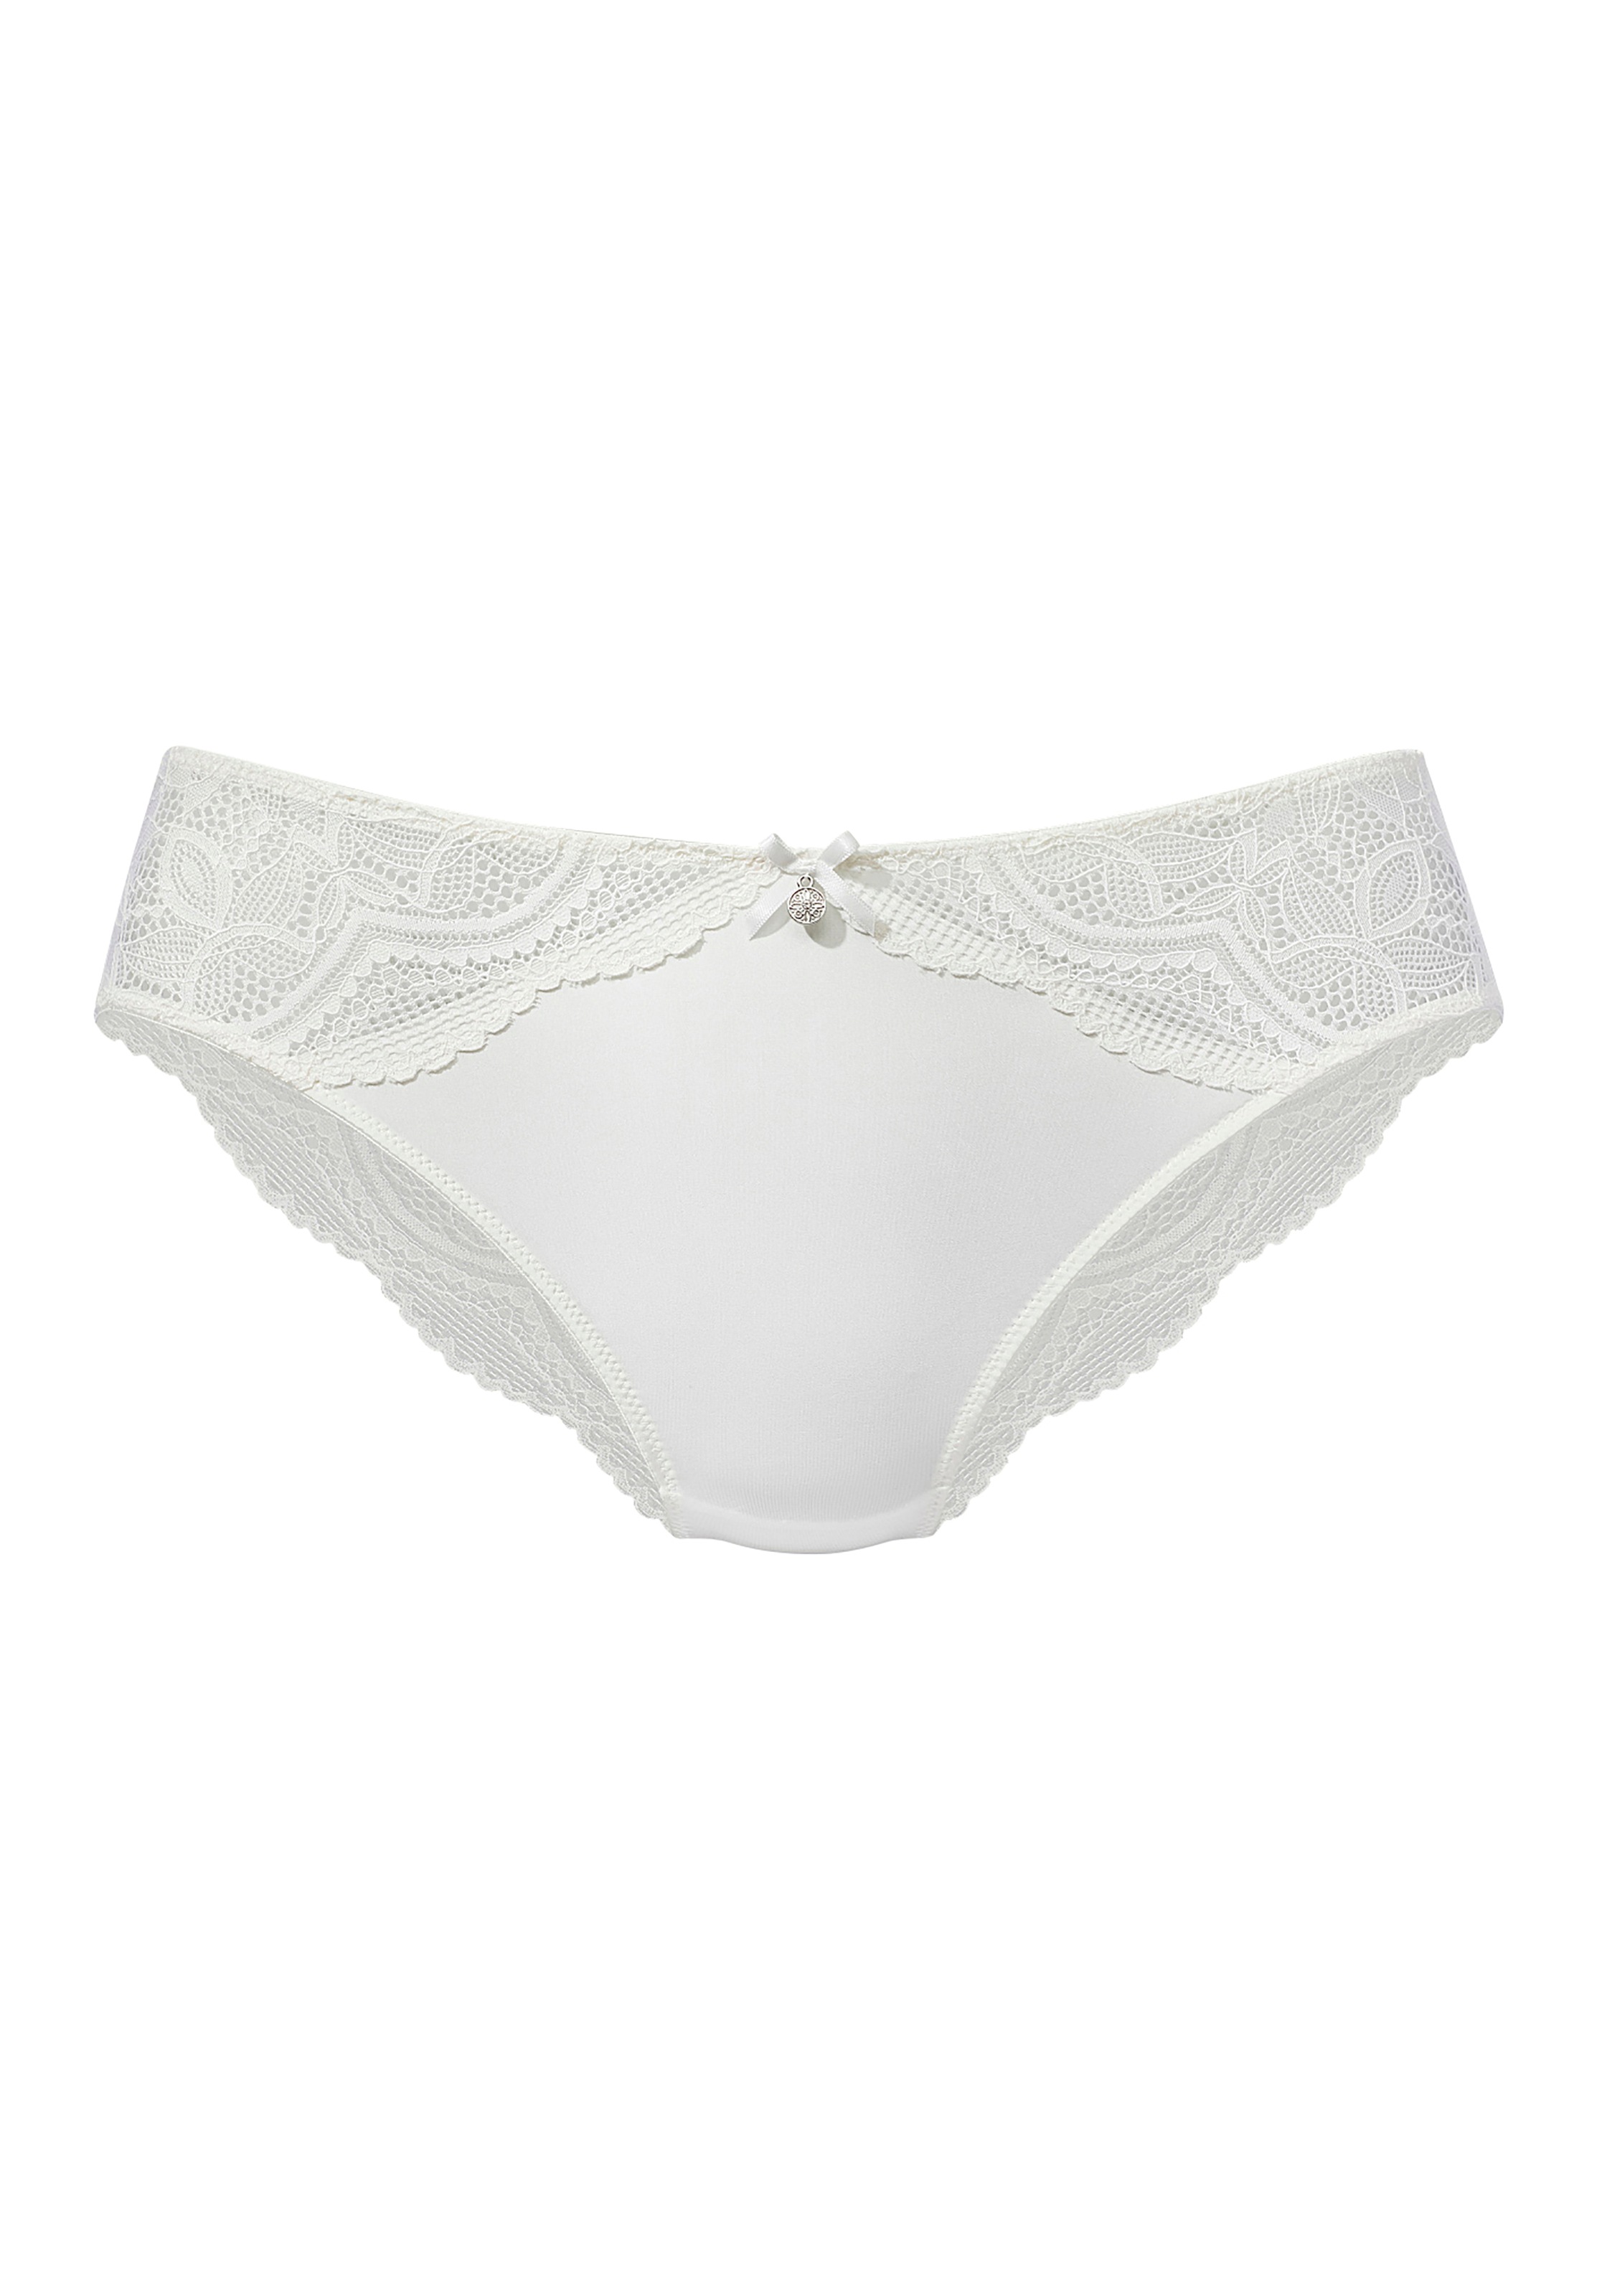 Nuance Panty, rundherum aus transparenter Spitze » LASCANA | Bademode,  Unterwäsche & Lingerie online kaufen